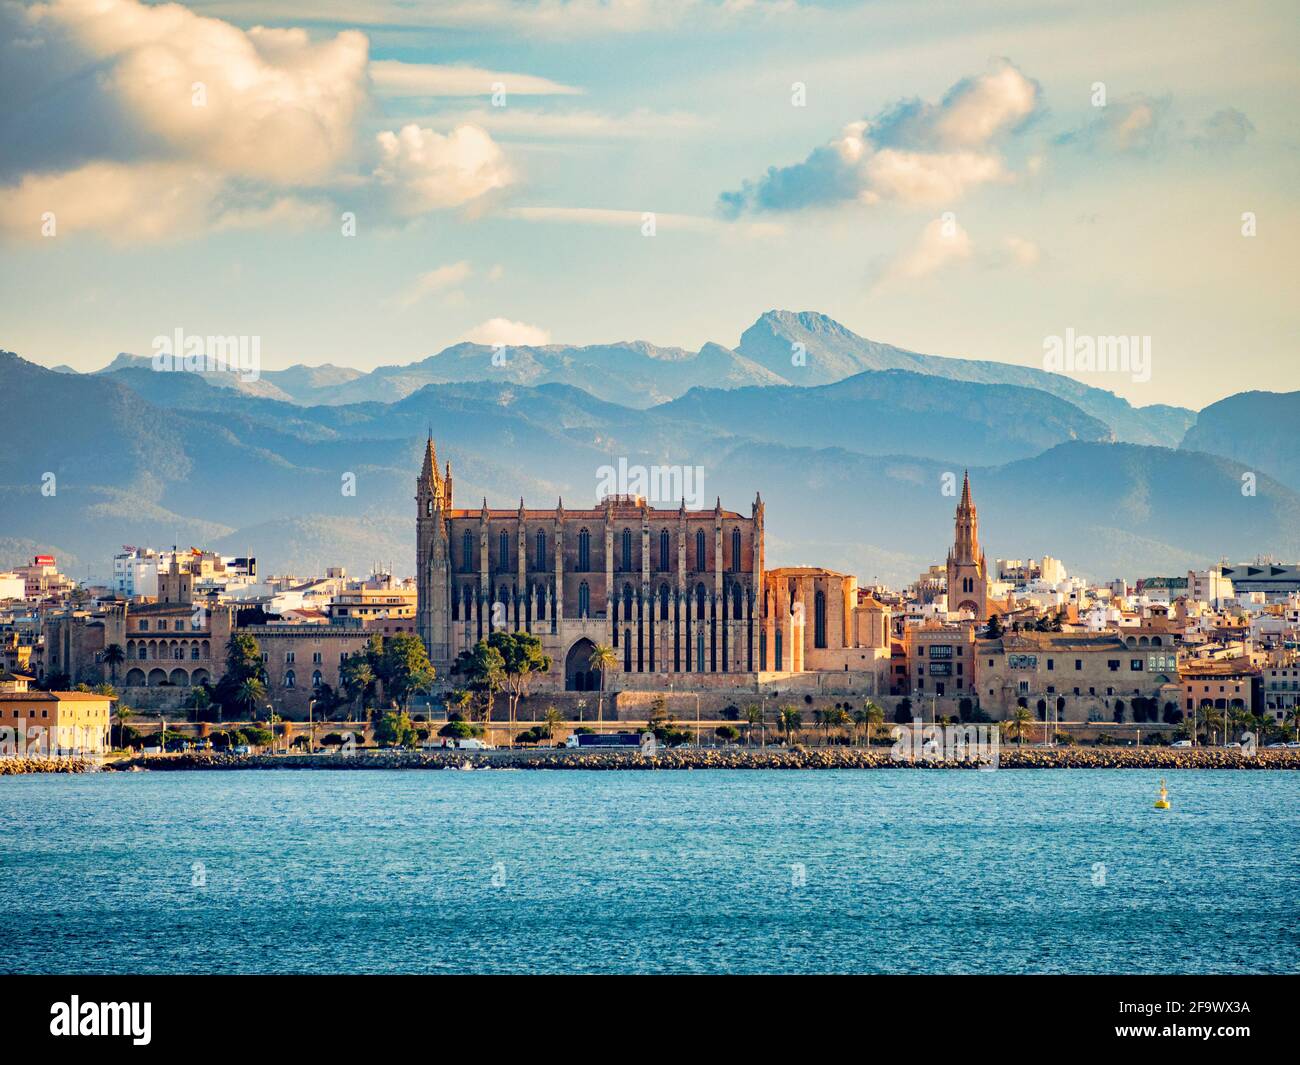 6 marzo 2020: Palma, Maiorca, Spagna - Vista della Cattedrale di Maiorca da una nave nel porto, sullo sfondo di una montagna. Foto Stock